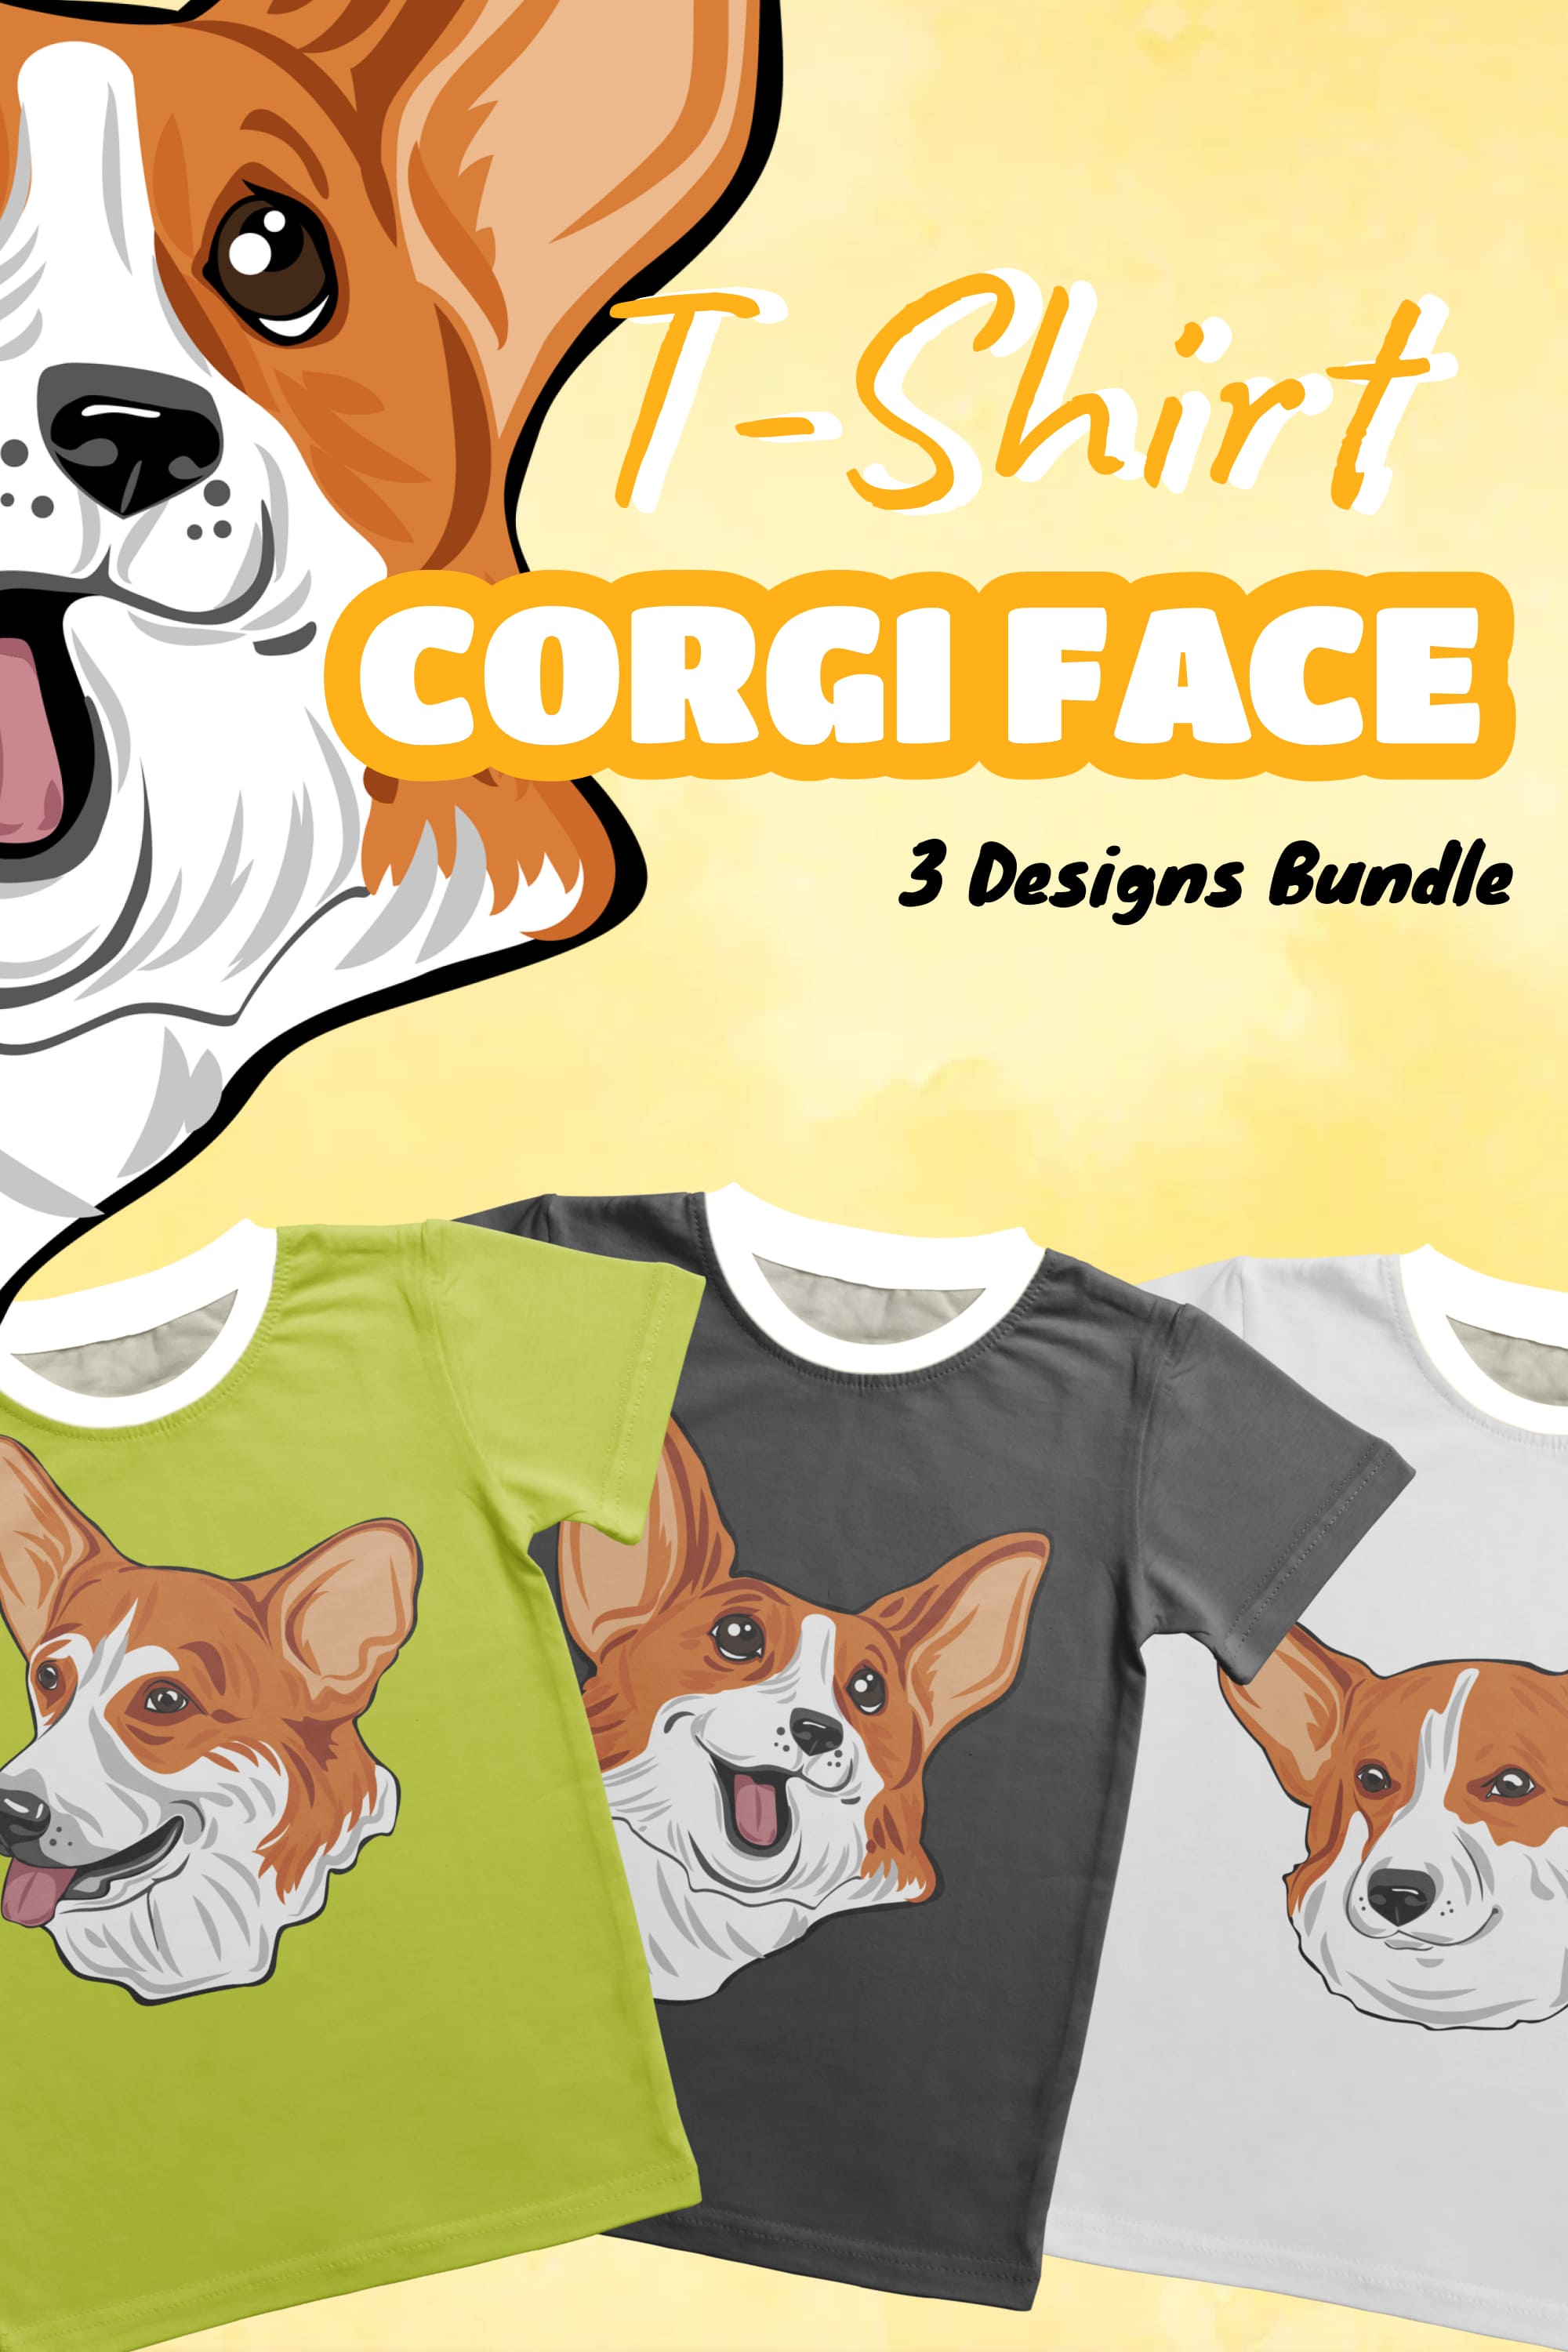 corgi face t shirt designs bundle pinterest 375